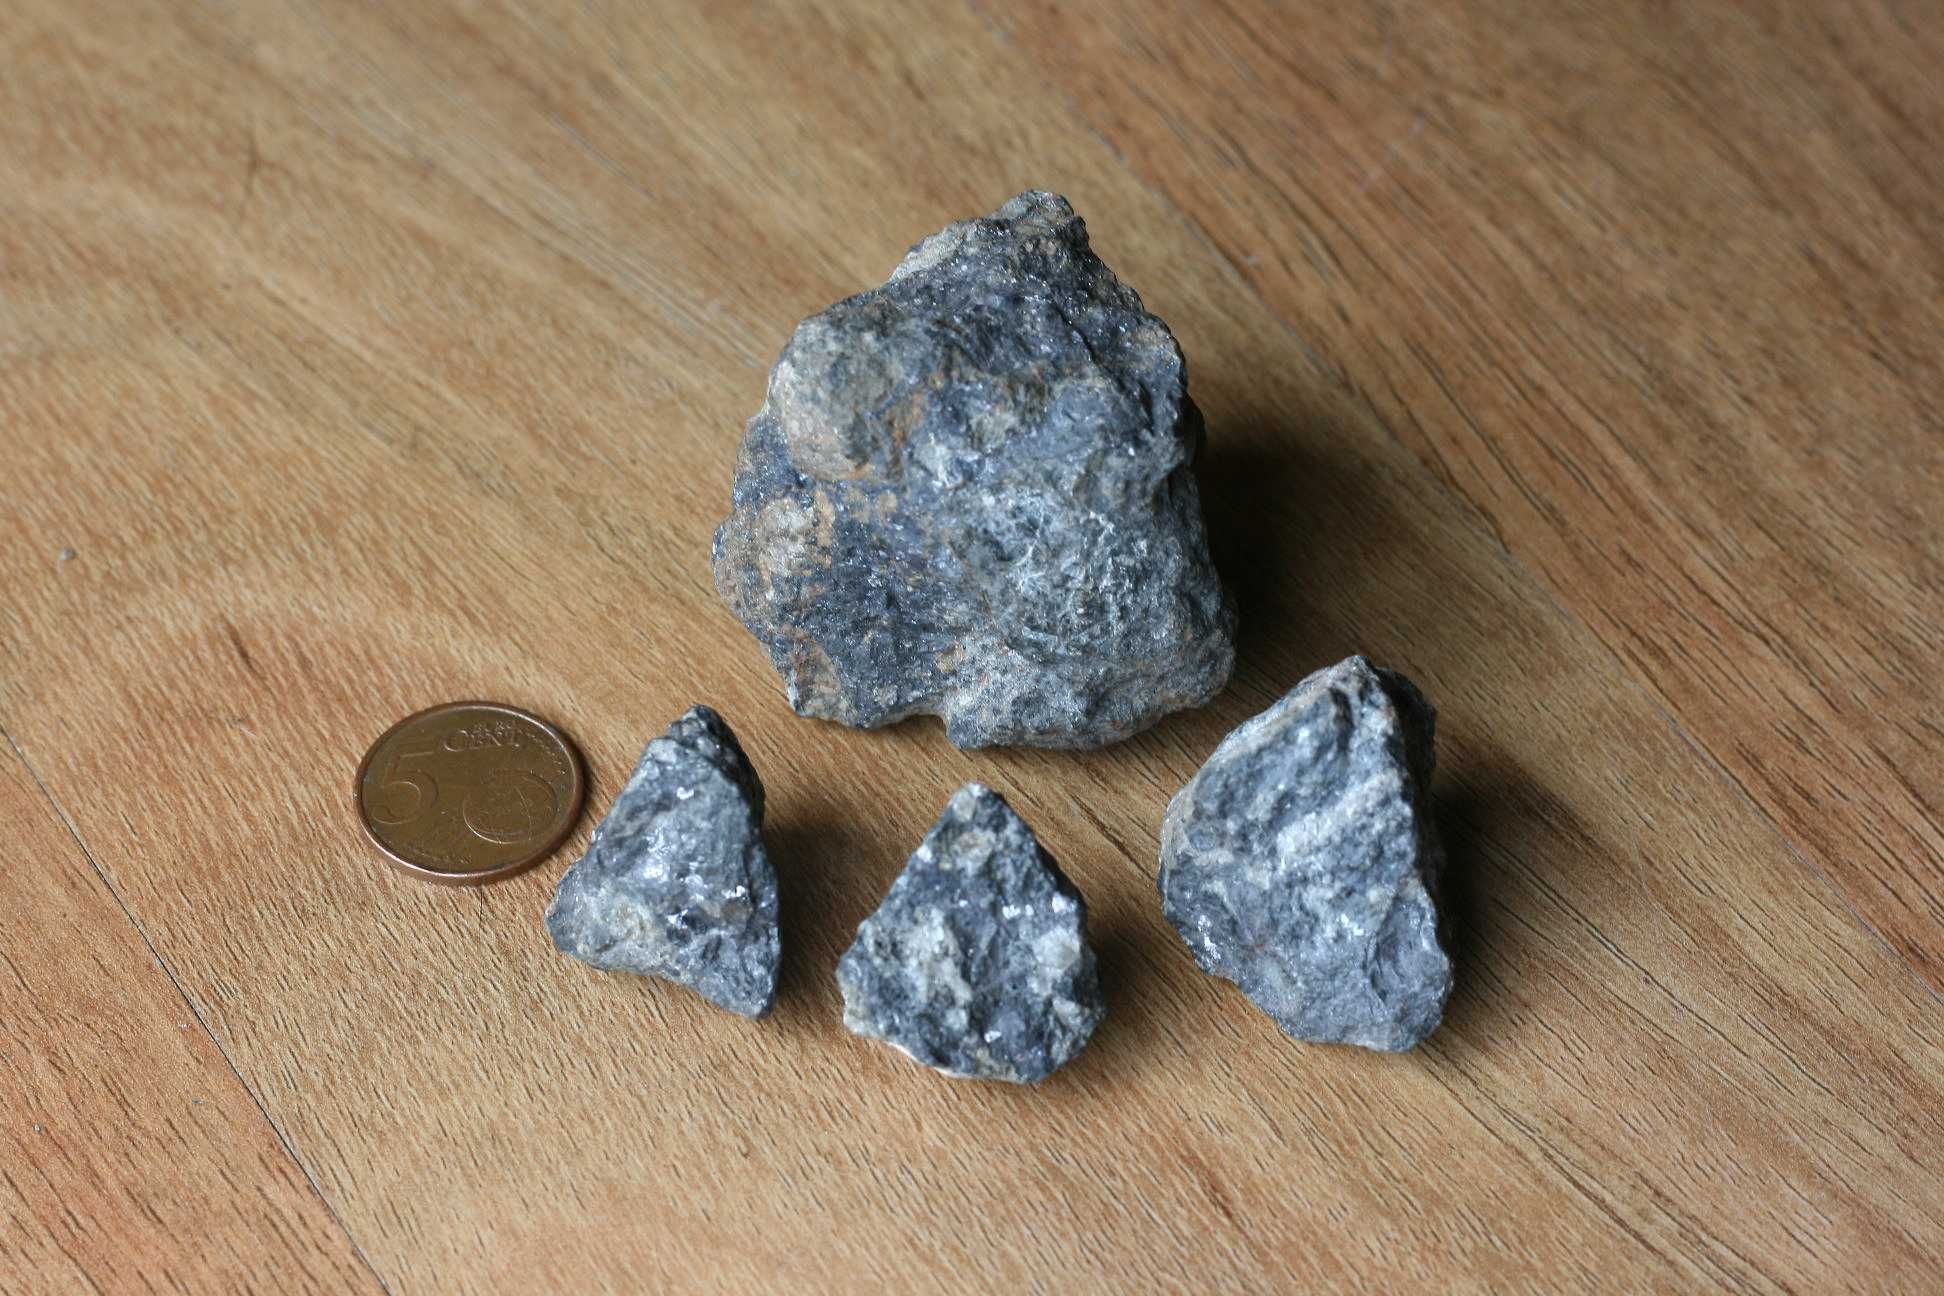 Minerais – Pirite, galena e volframite (inclui envio)